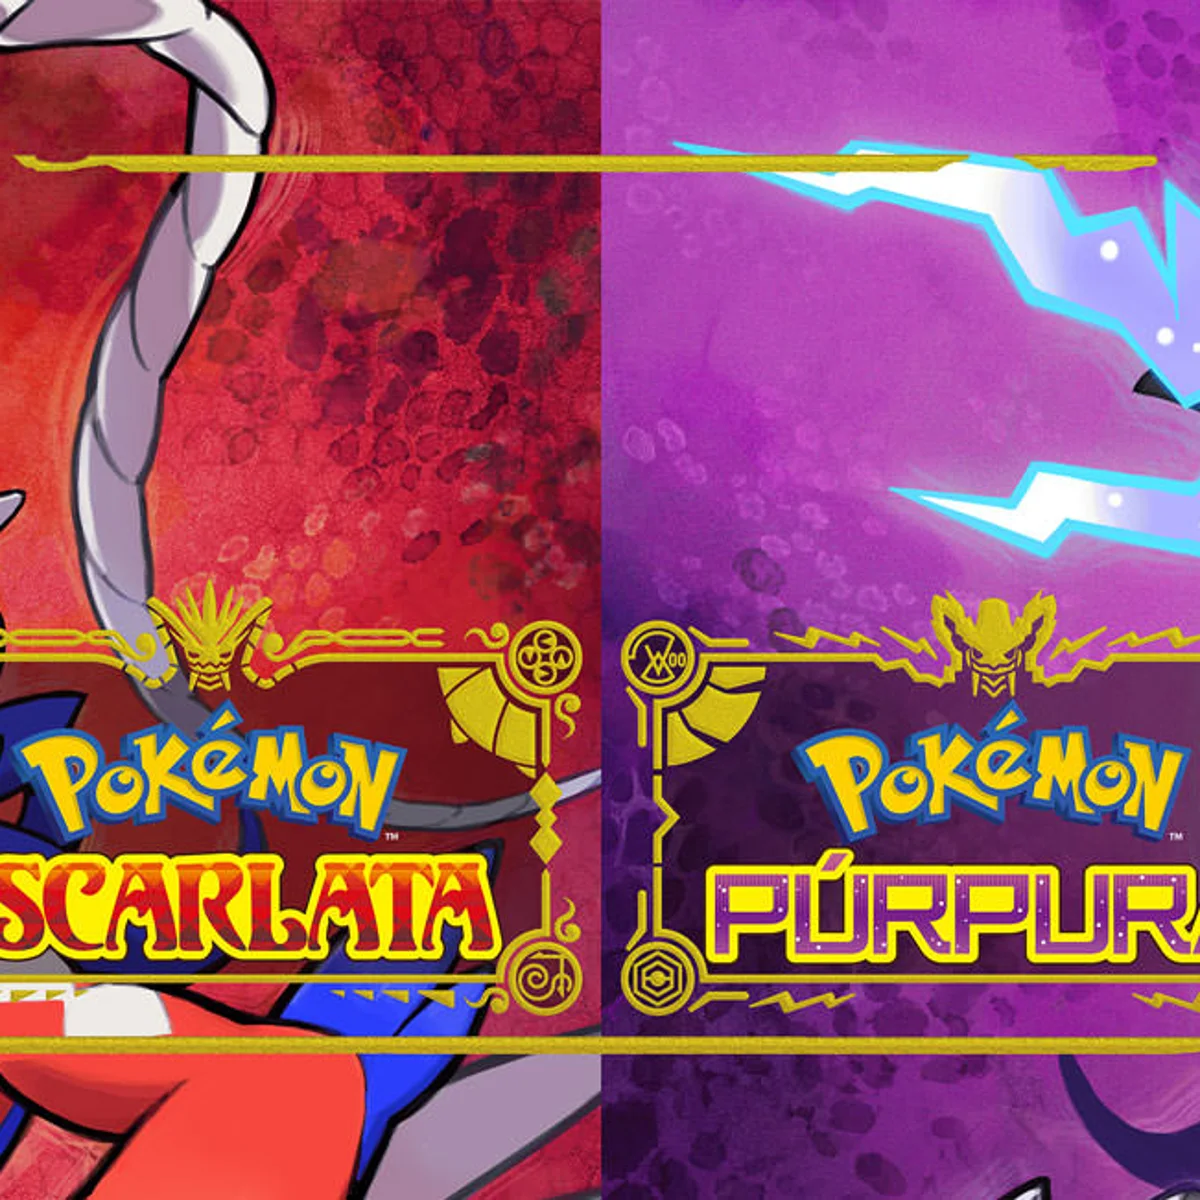 Pokémon Escarlata y Púrpura': un filtración revela posibles nuevos Pokémon  que estarán en el juego